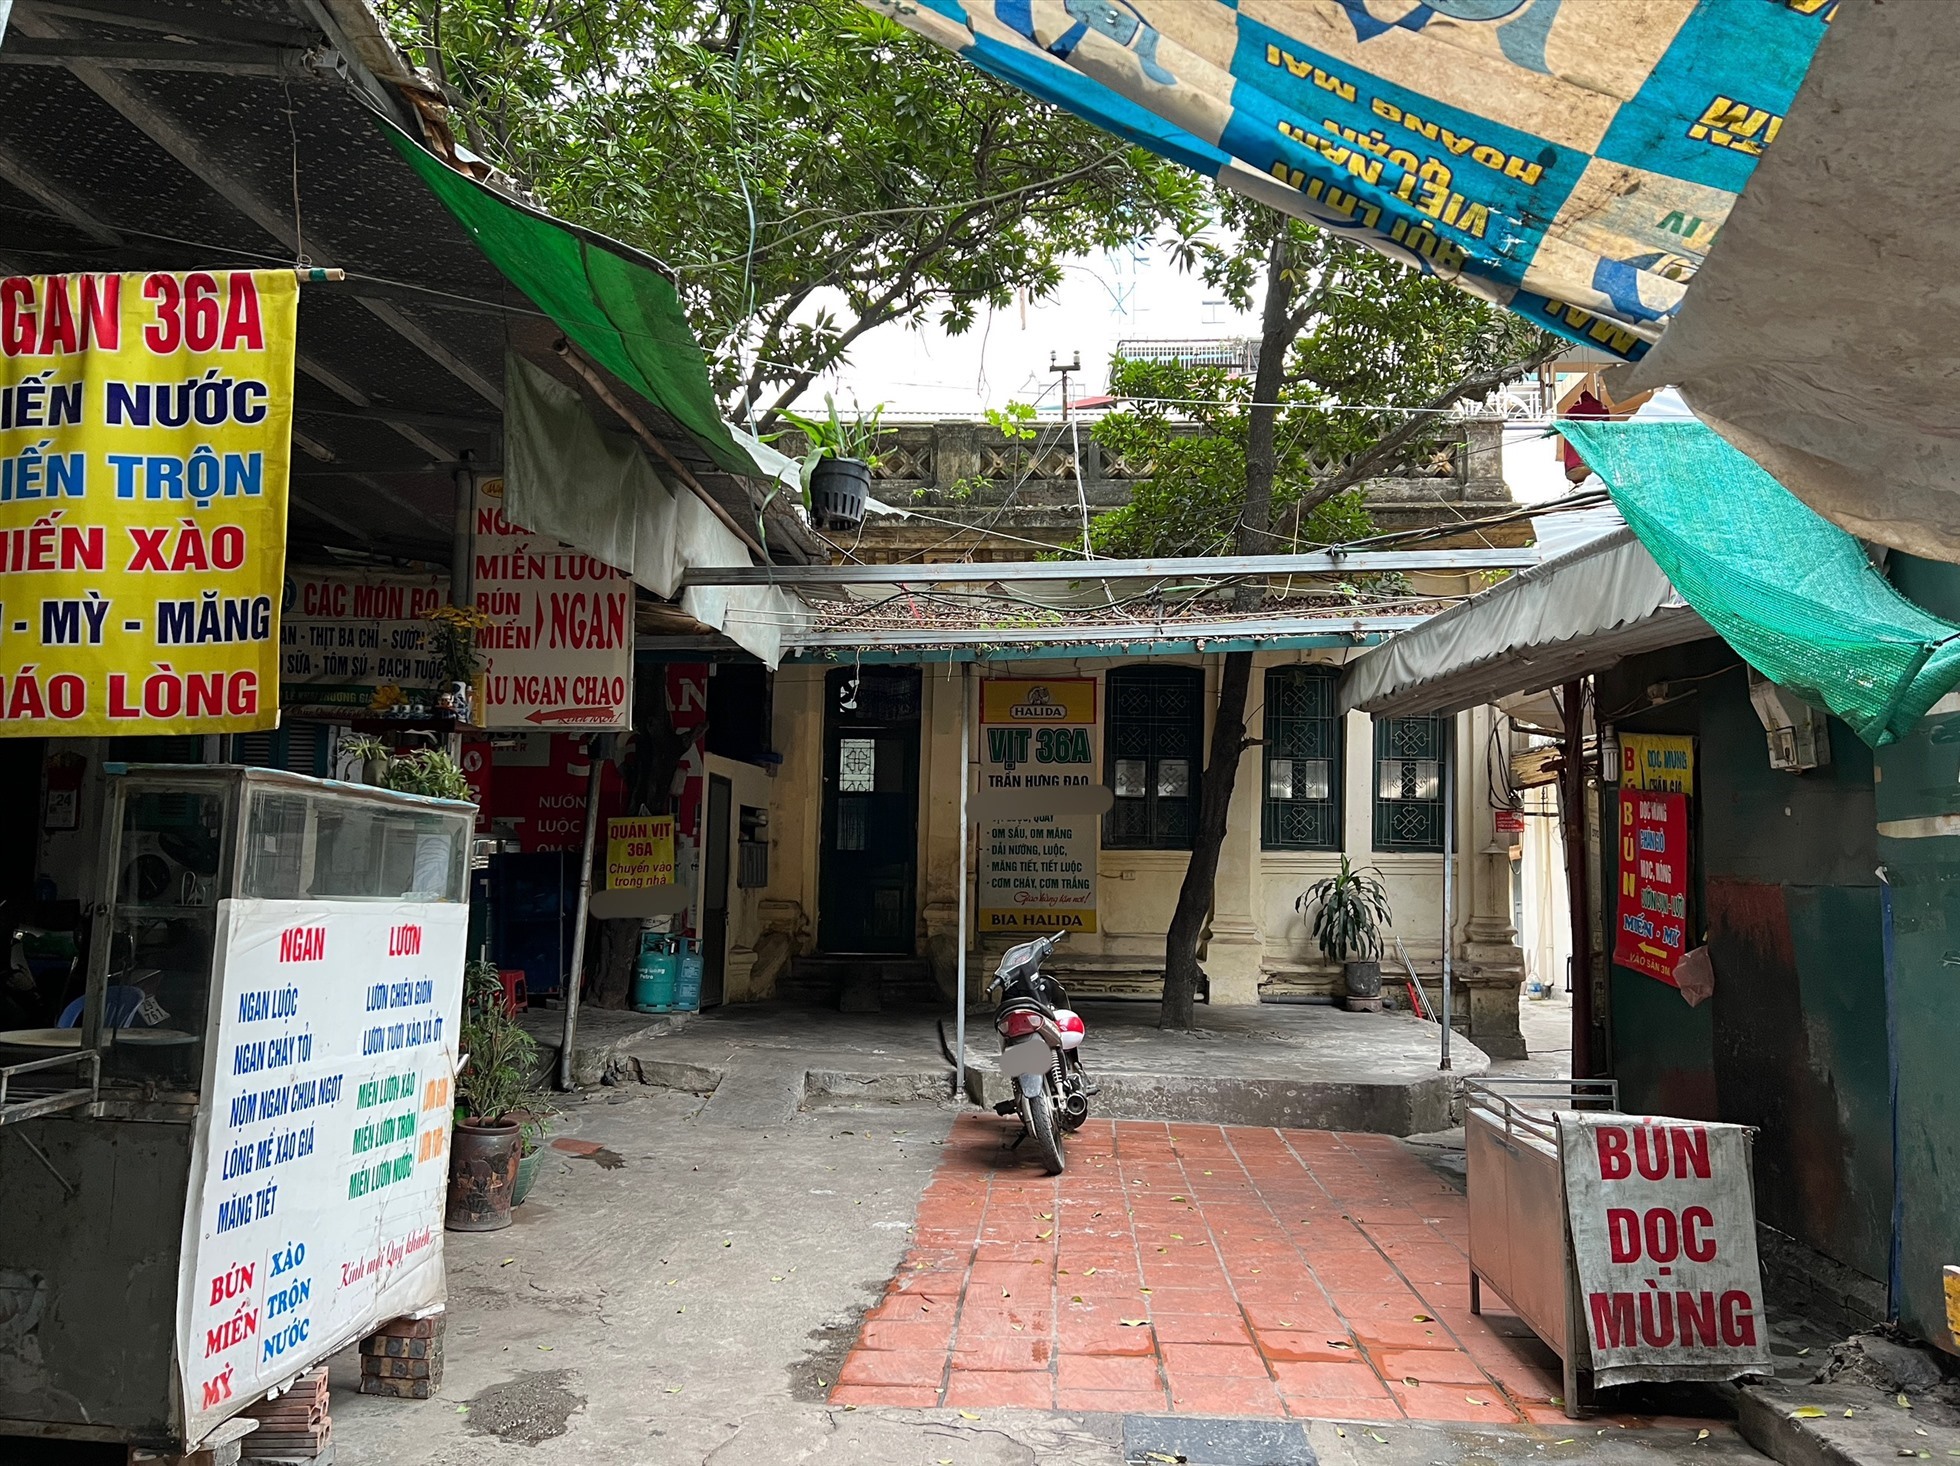 Nhiều người dân tận dụng việc bỏ không đã căng mái tạm che nắng mưa để bán hàng. Ảnh: Nguyễn Thúy.